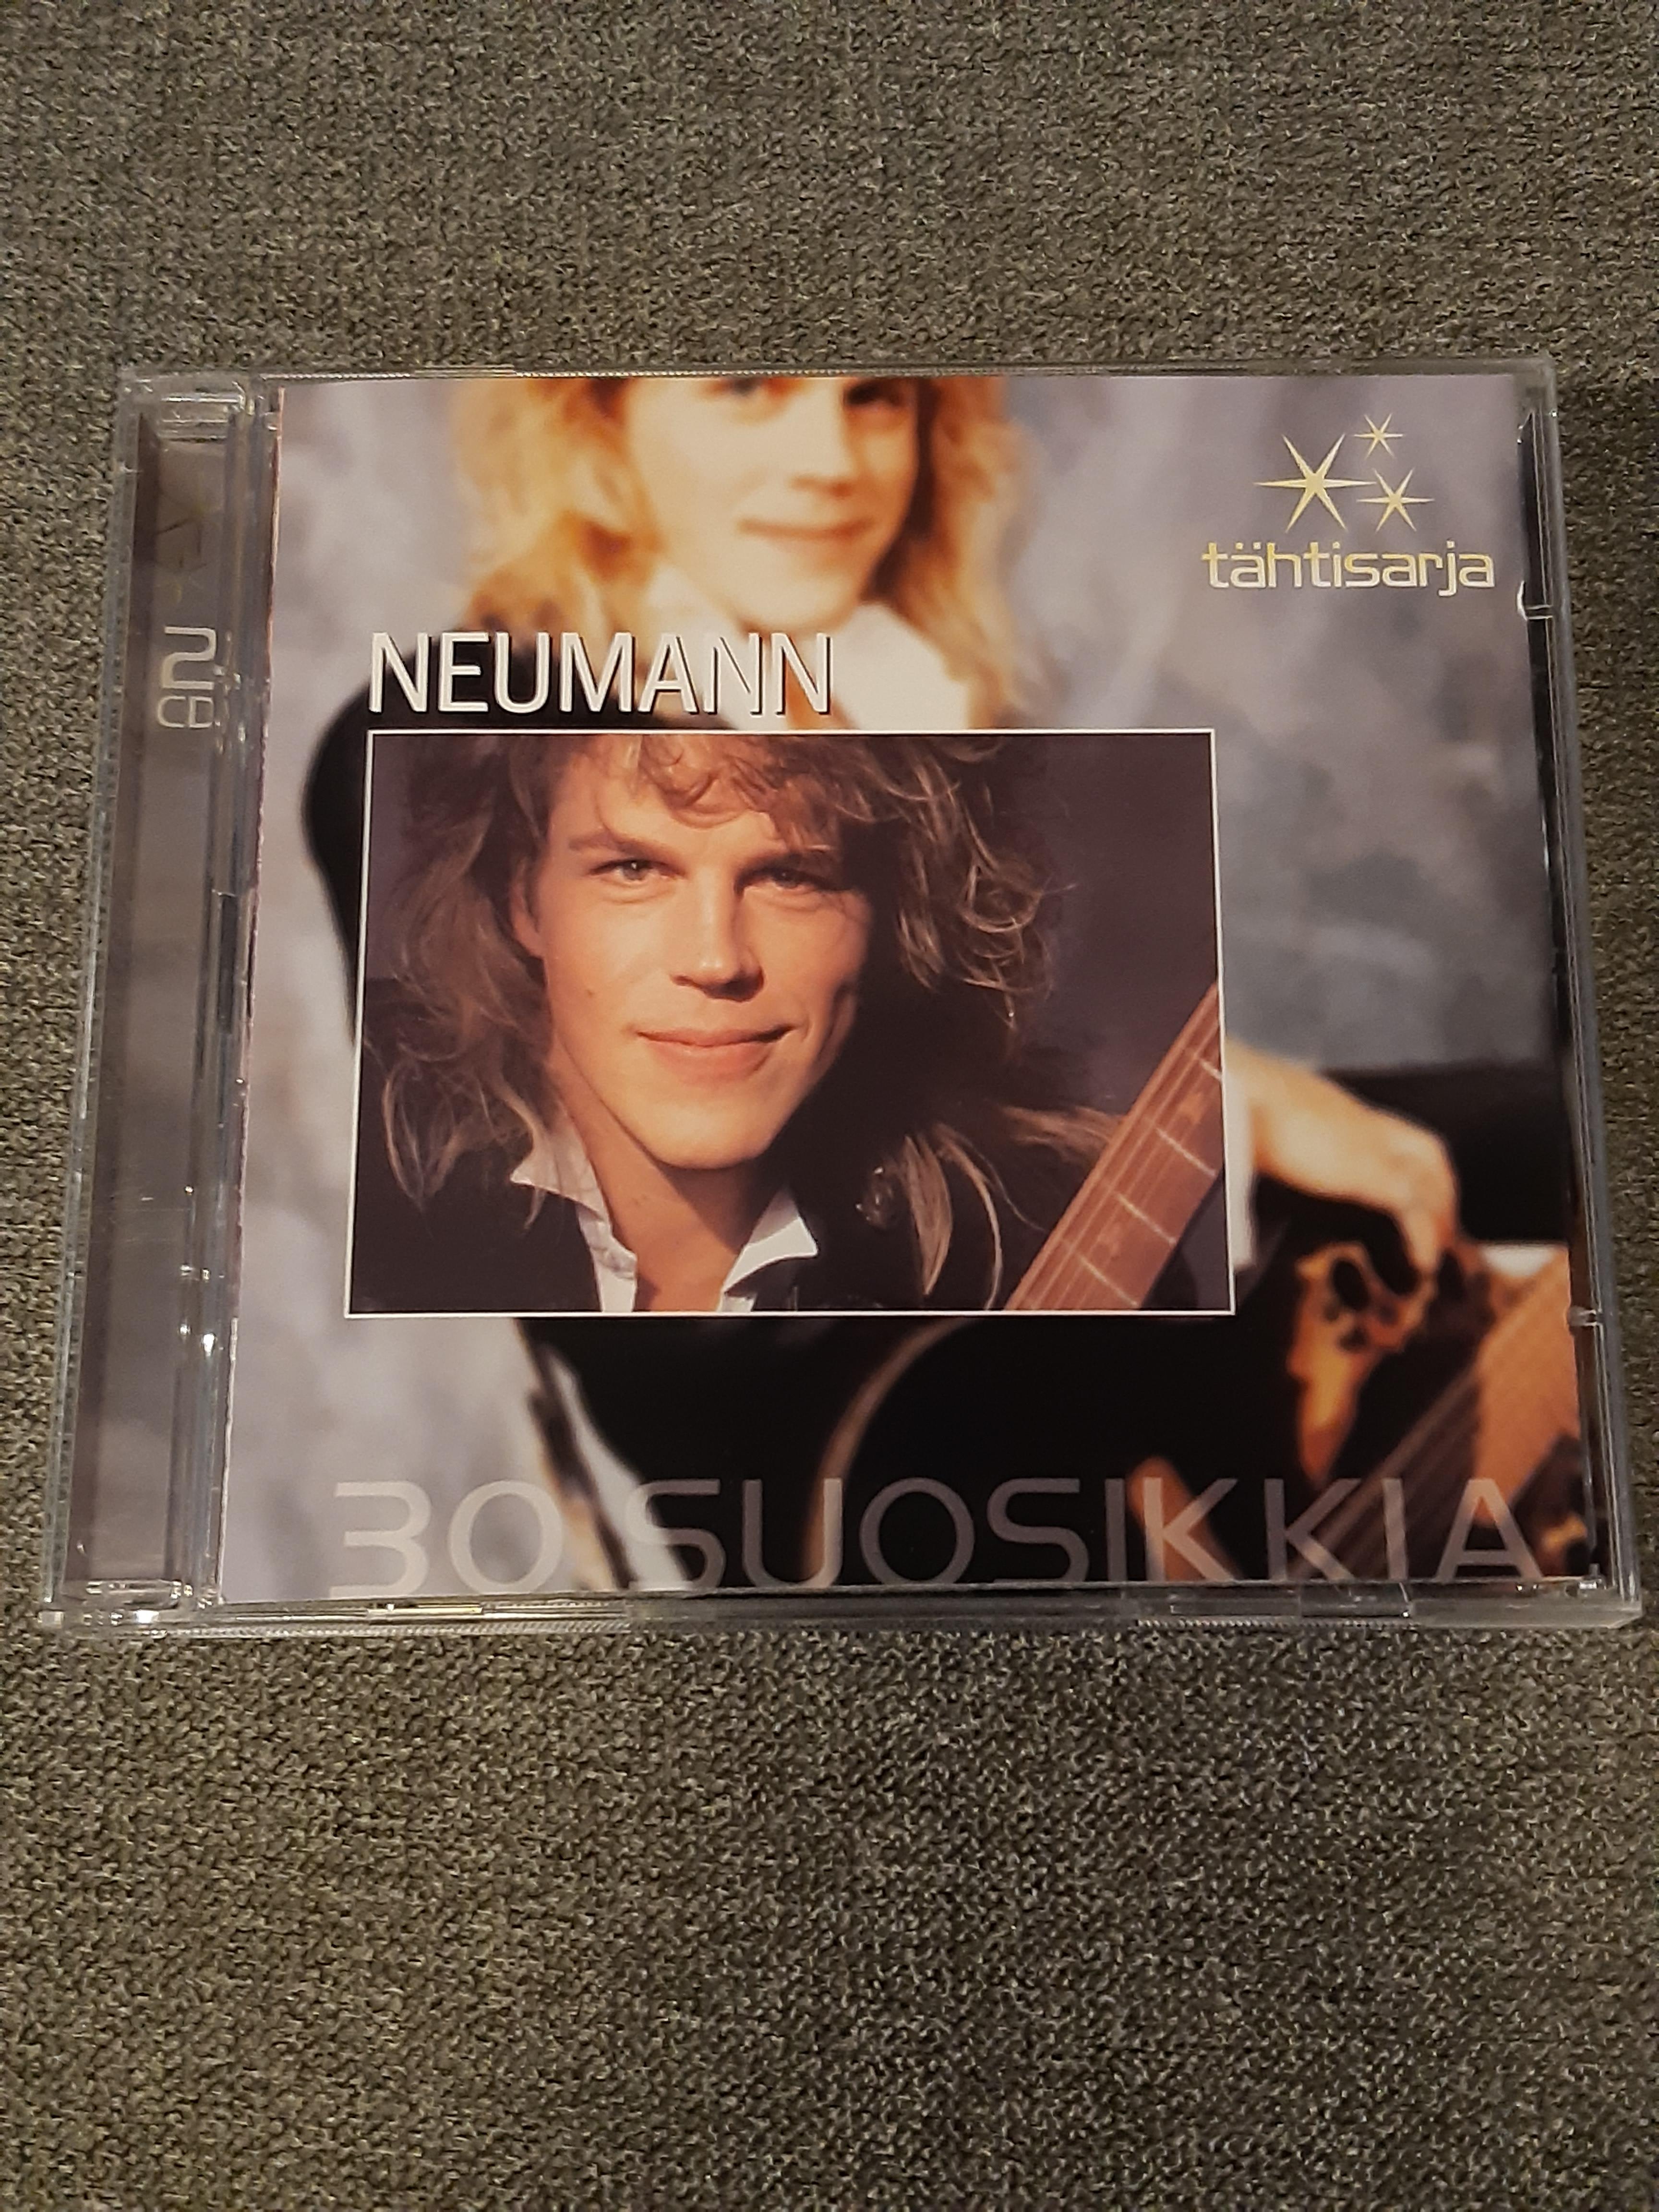 Neumann - 30 Suosikkia - 2CD (käytetty)